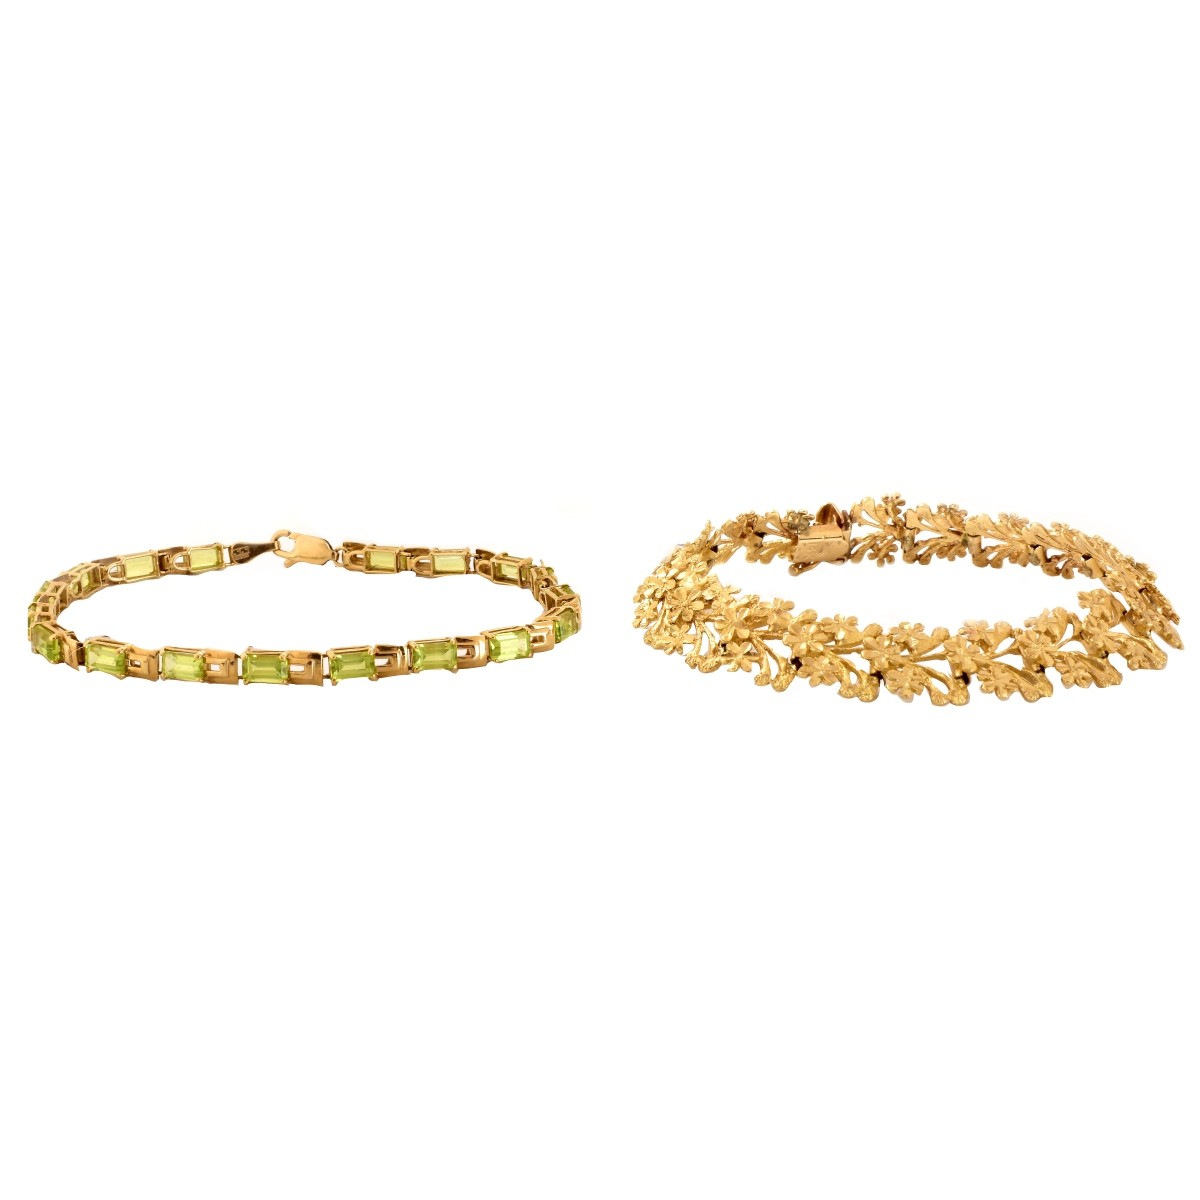 Two 14K Gold Bracelets